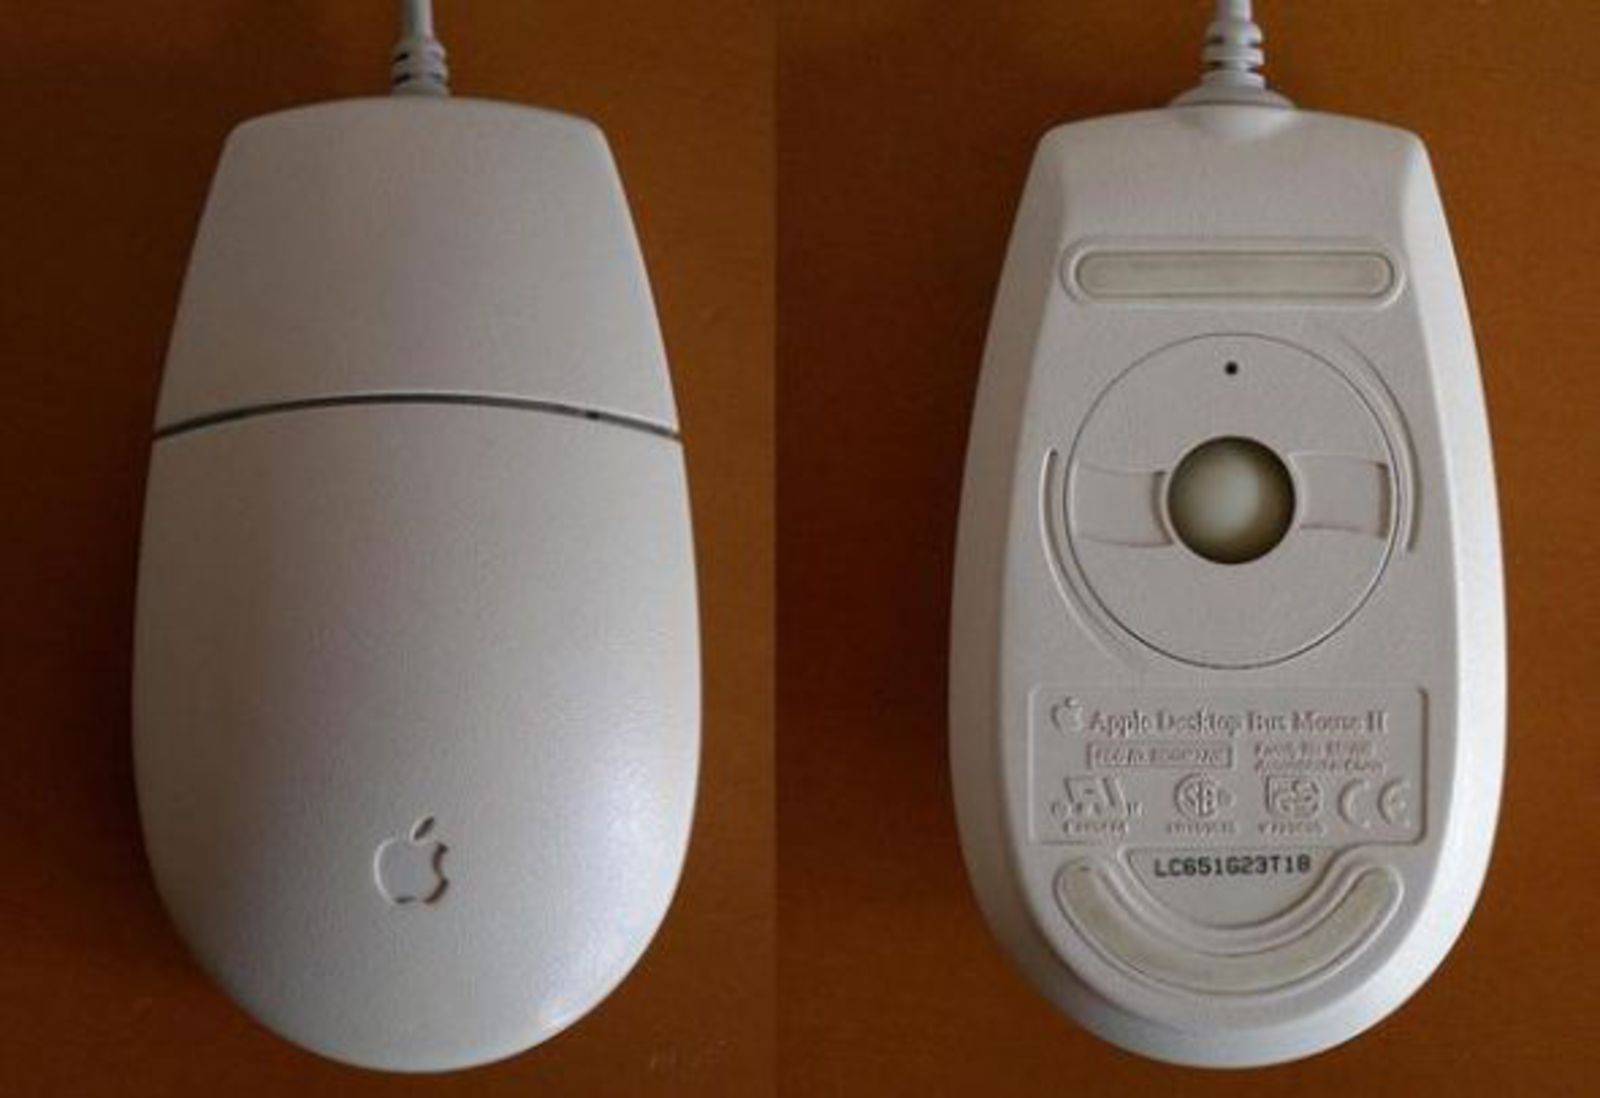 Мышка снизу. Шаровой привод компьютерной мыши. Компьютерная мышь INTELLIMOUSE 90. Apple Mouse 2000. Компьютерная мышь с шариком снизу.